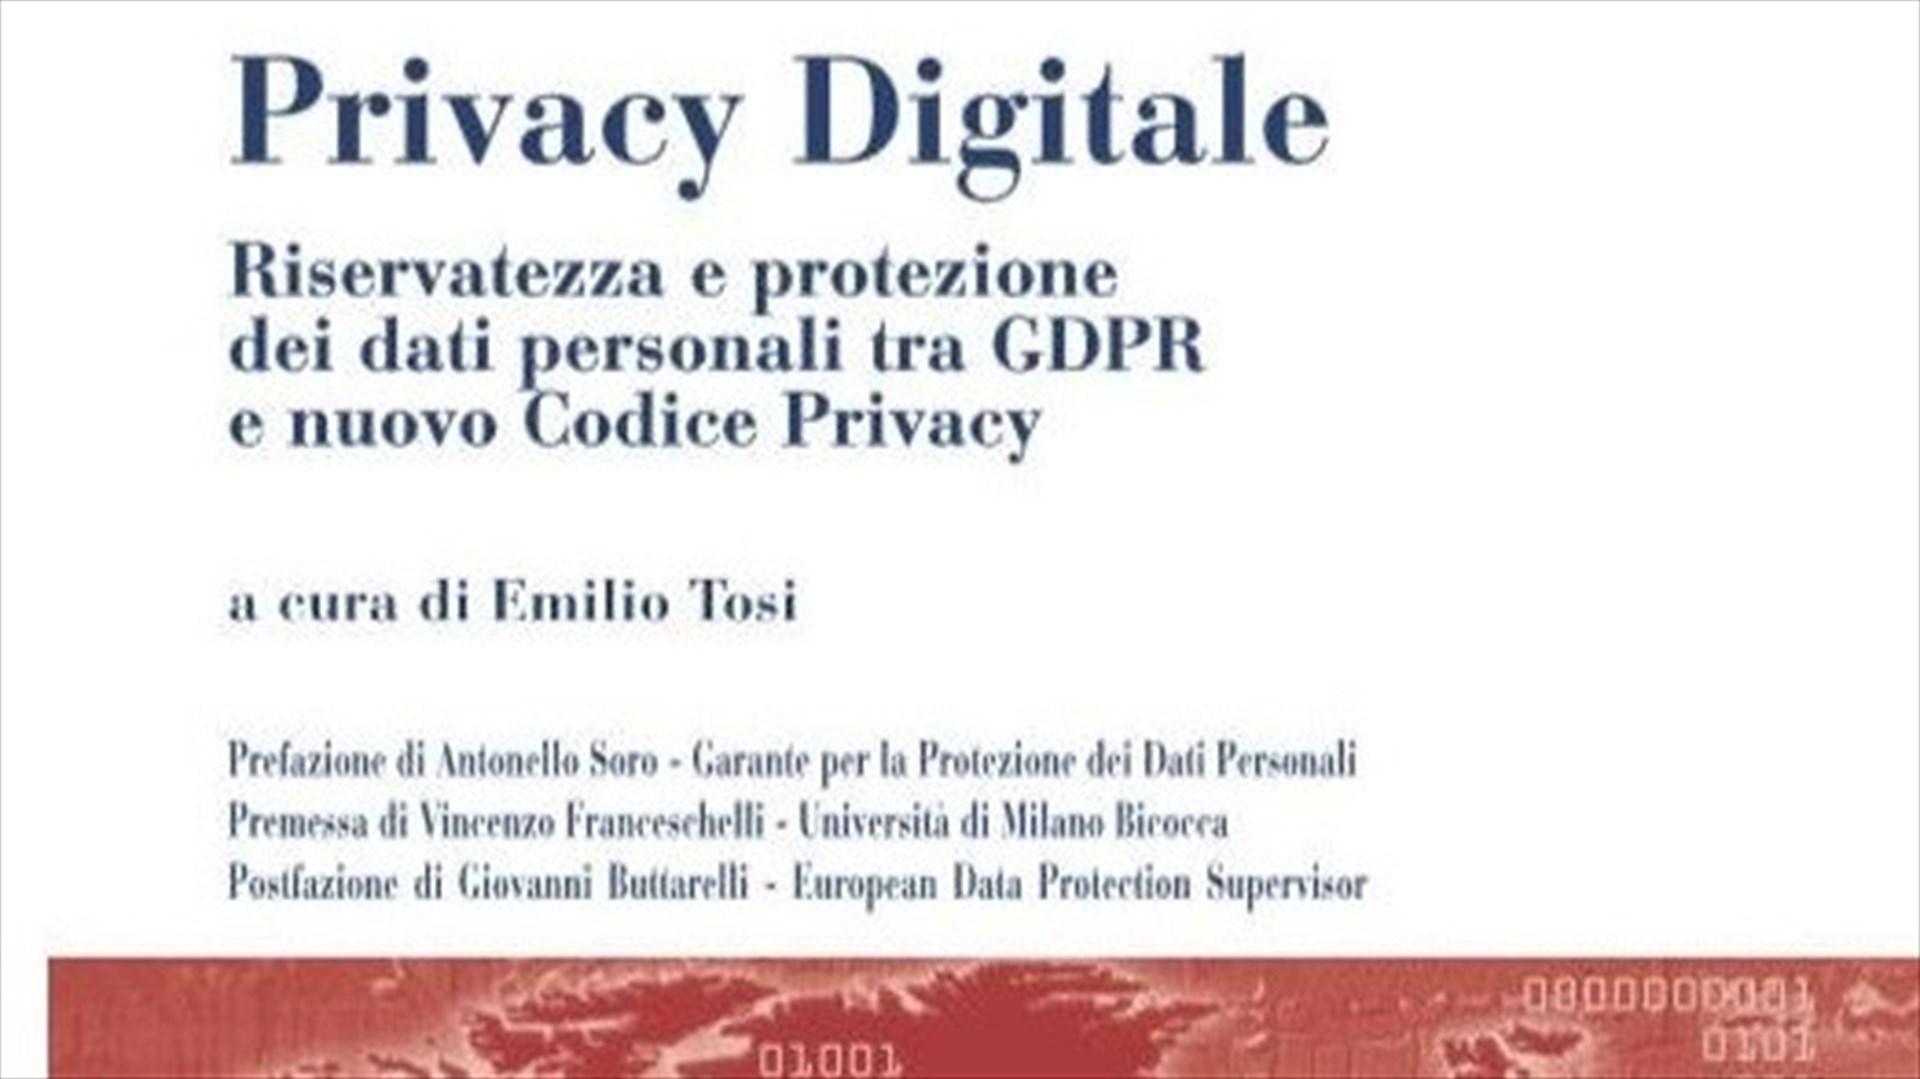 IX Convegno DNT - Persona, riservatezza, protezione dei dati personali e GDPR  nella società digitale